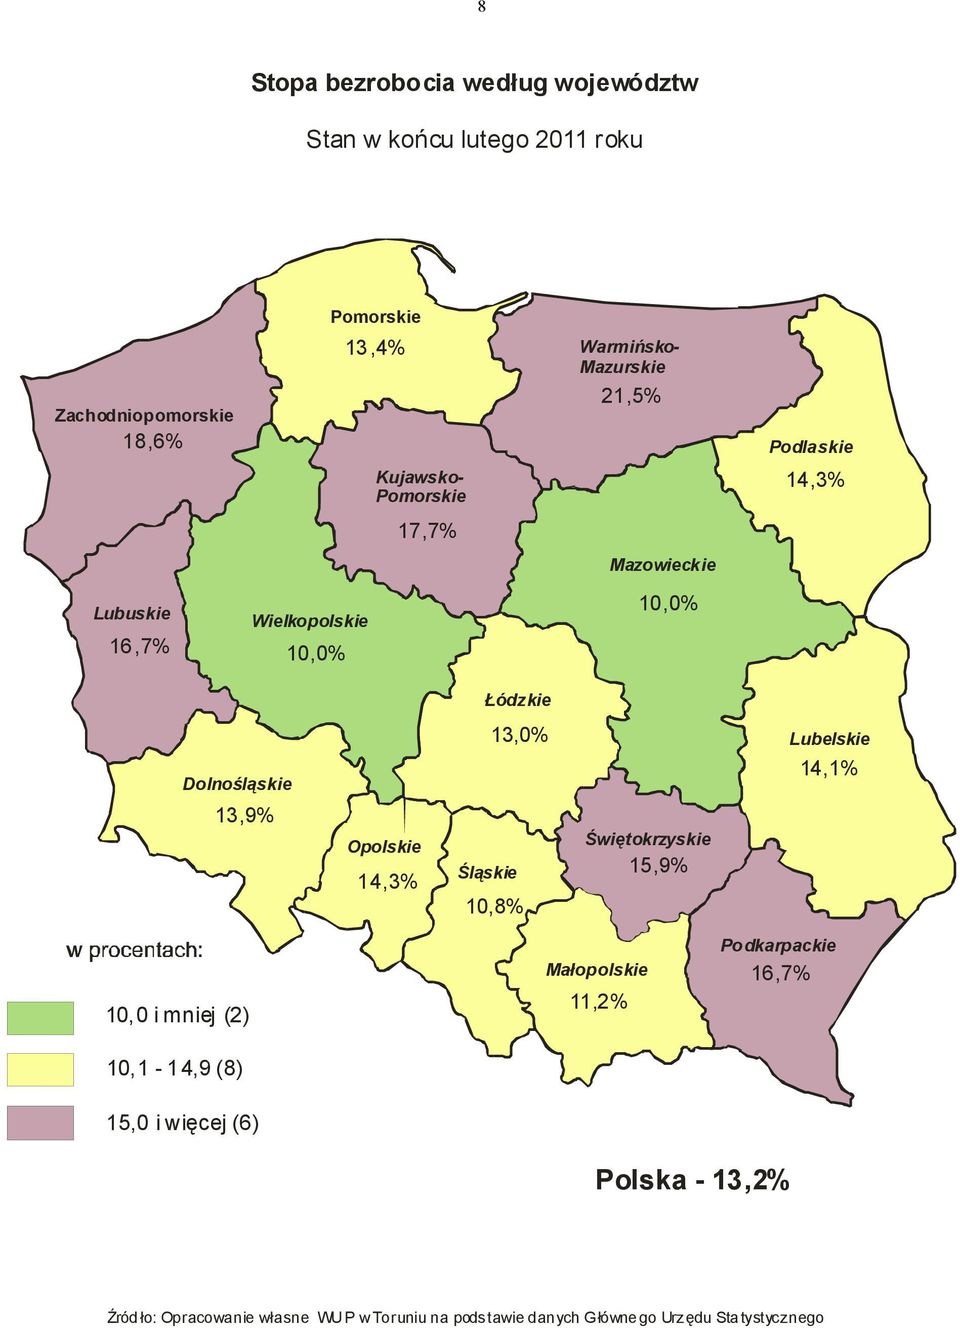 Opolskie 14,3% 13,0% Śląskie 10,8% Świętokrzyskie 15,9% Lubelskie 14,1% 10,0 i mniej (2) Podkarpackie Małopolskie 16,7% 11,2%